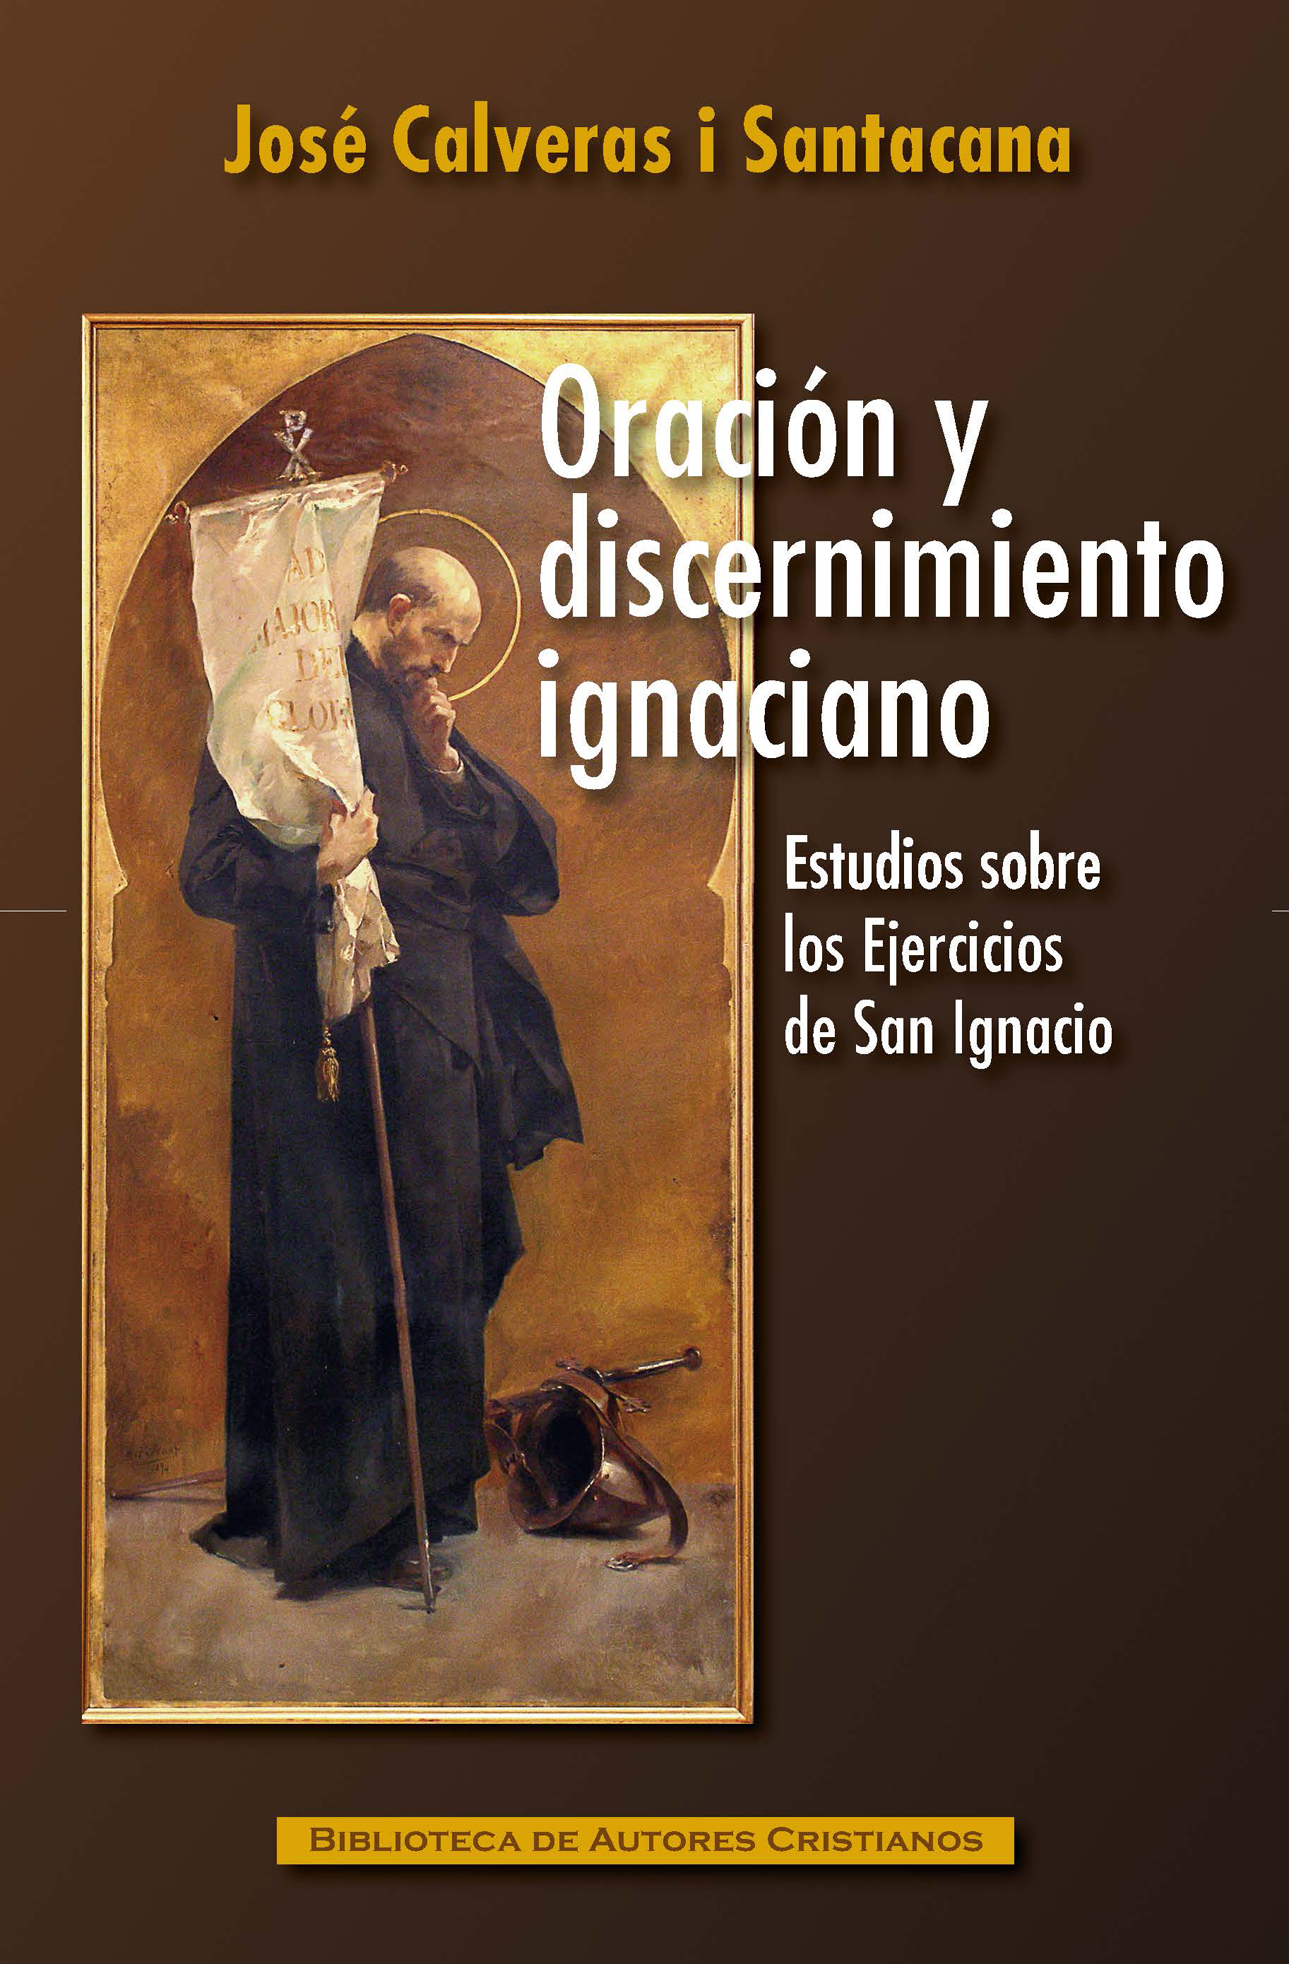 Oración y discernimiento ignaciano. Estudios sobre los Ejercicios de San Ignacio